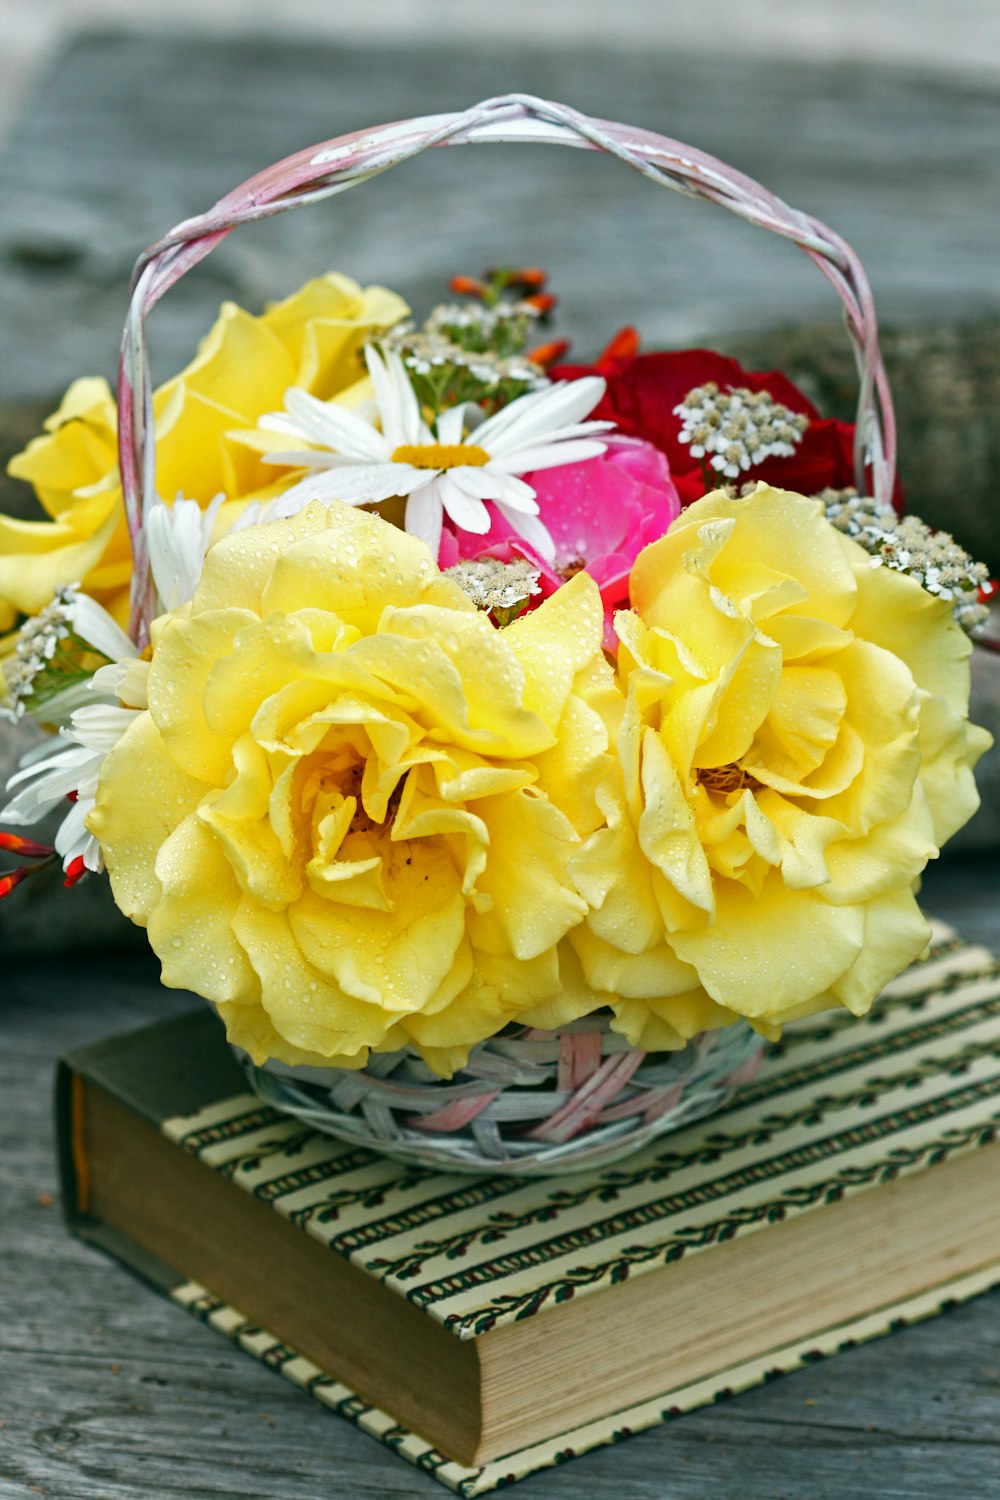 책에 바구니에 노란 장미 꽃